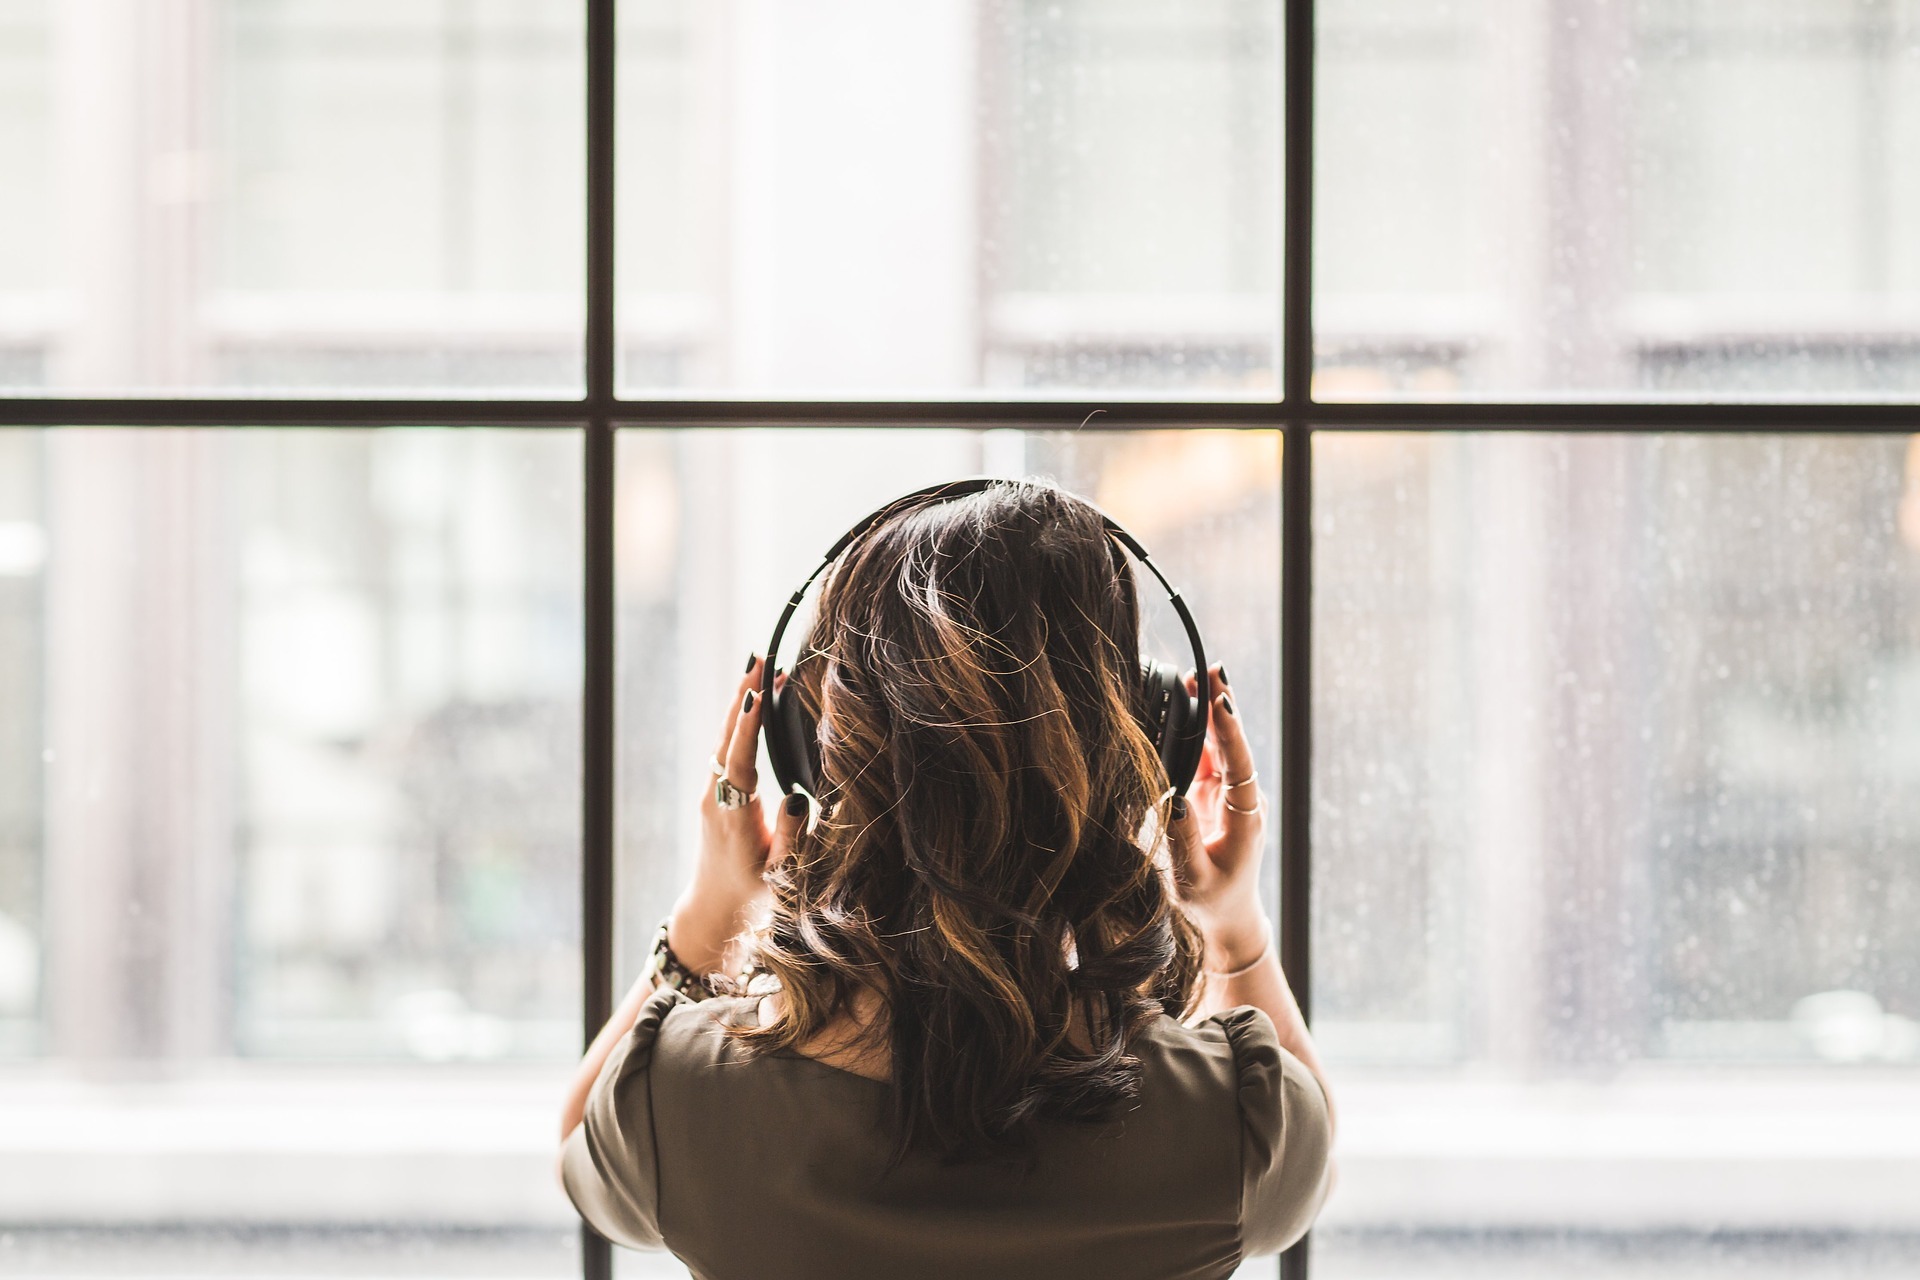 Aber die Lösung ist nicht schwer: Kopfhörer! Die passende Playlist oder der richtige Podcast können deine Produktivität noch zusätzlich steigern.